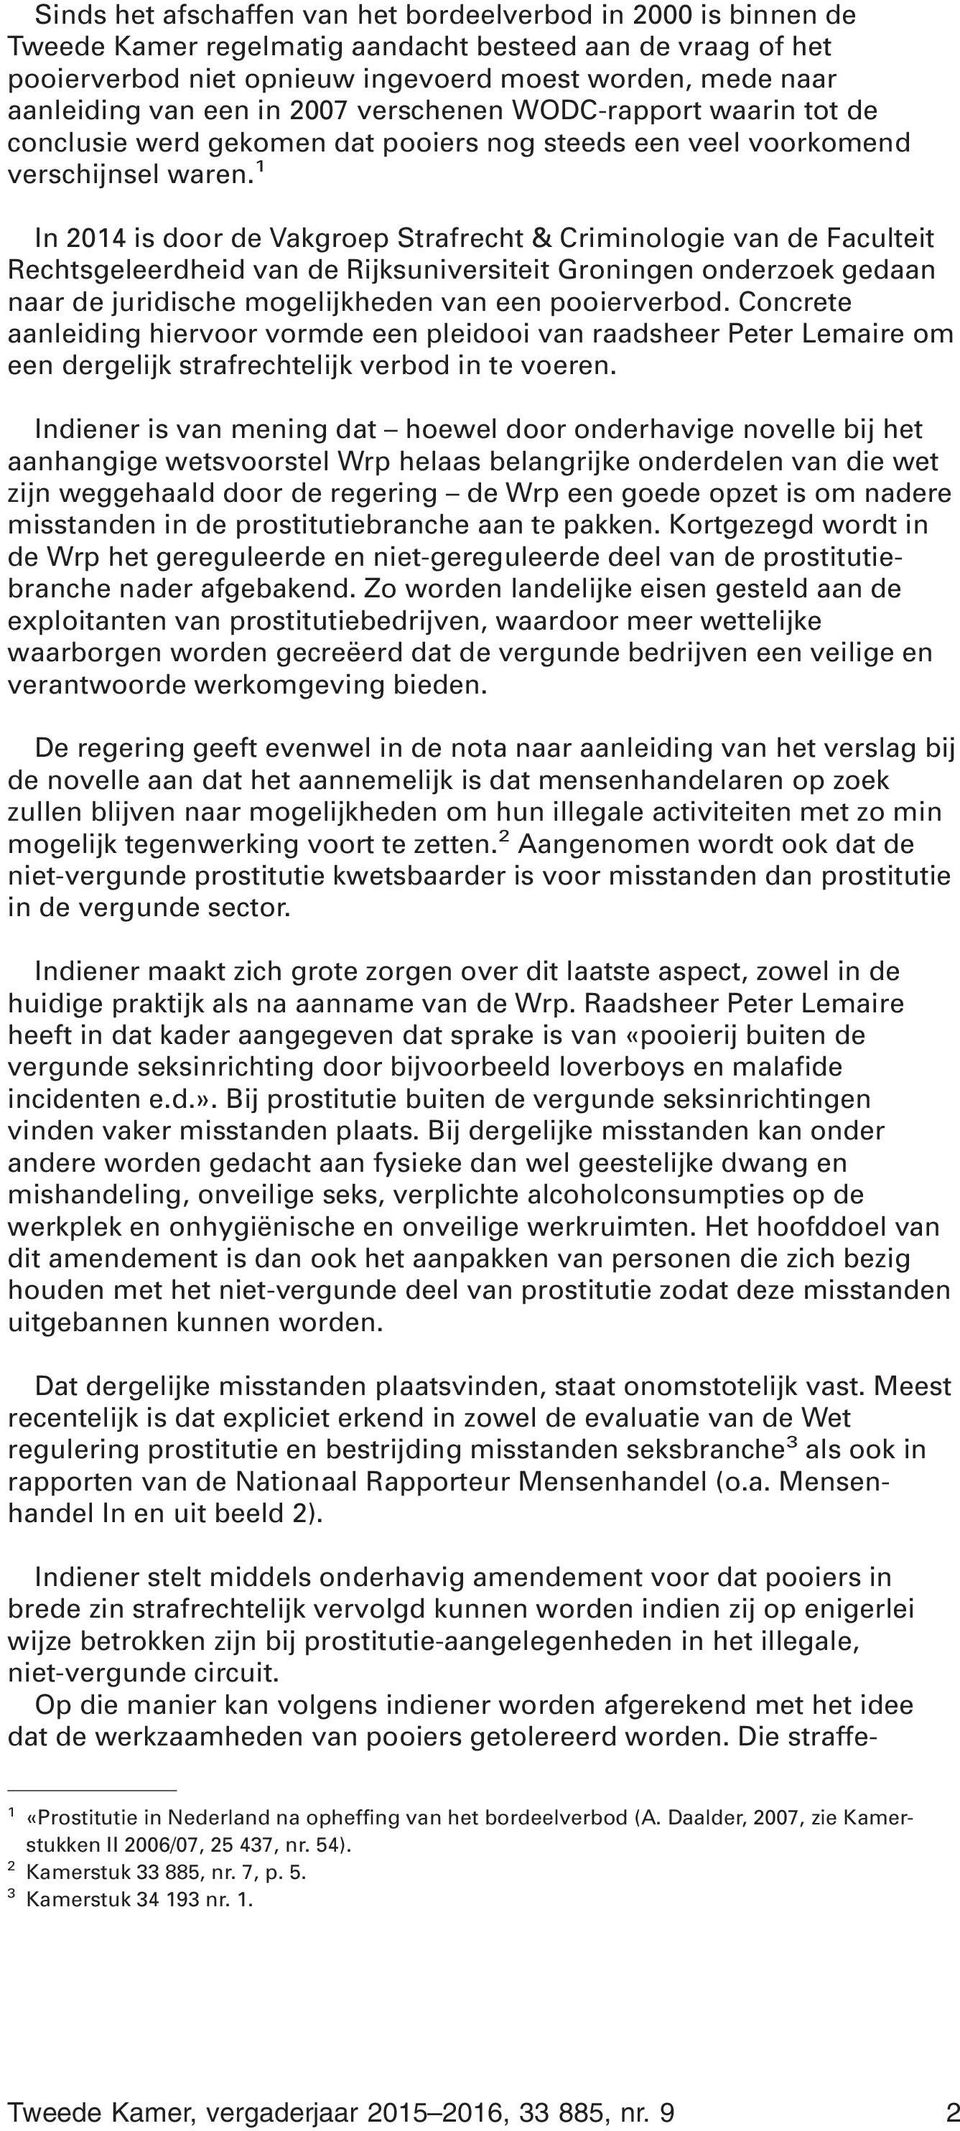 1 In 2014 is door de Vakgroep Strafrecht & Criminologie van de Faculteit Rechtsgeleerdheid van de Rijksuniversiteit Groningen onderzoek gedaan naar de juridische mogelijkheden van een pooierverbod.